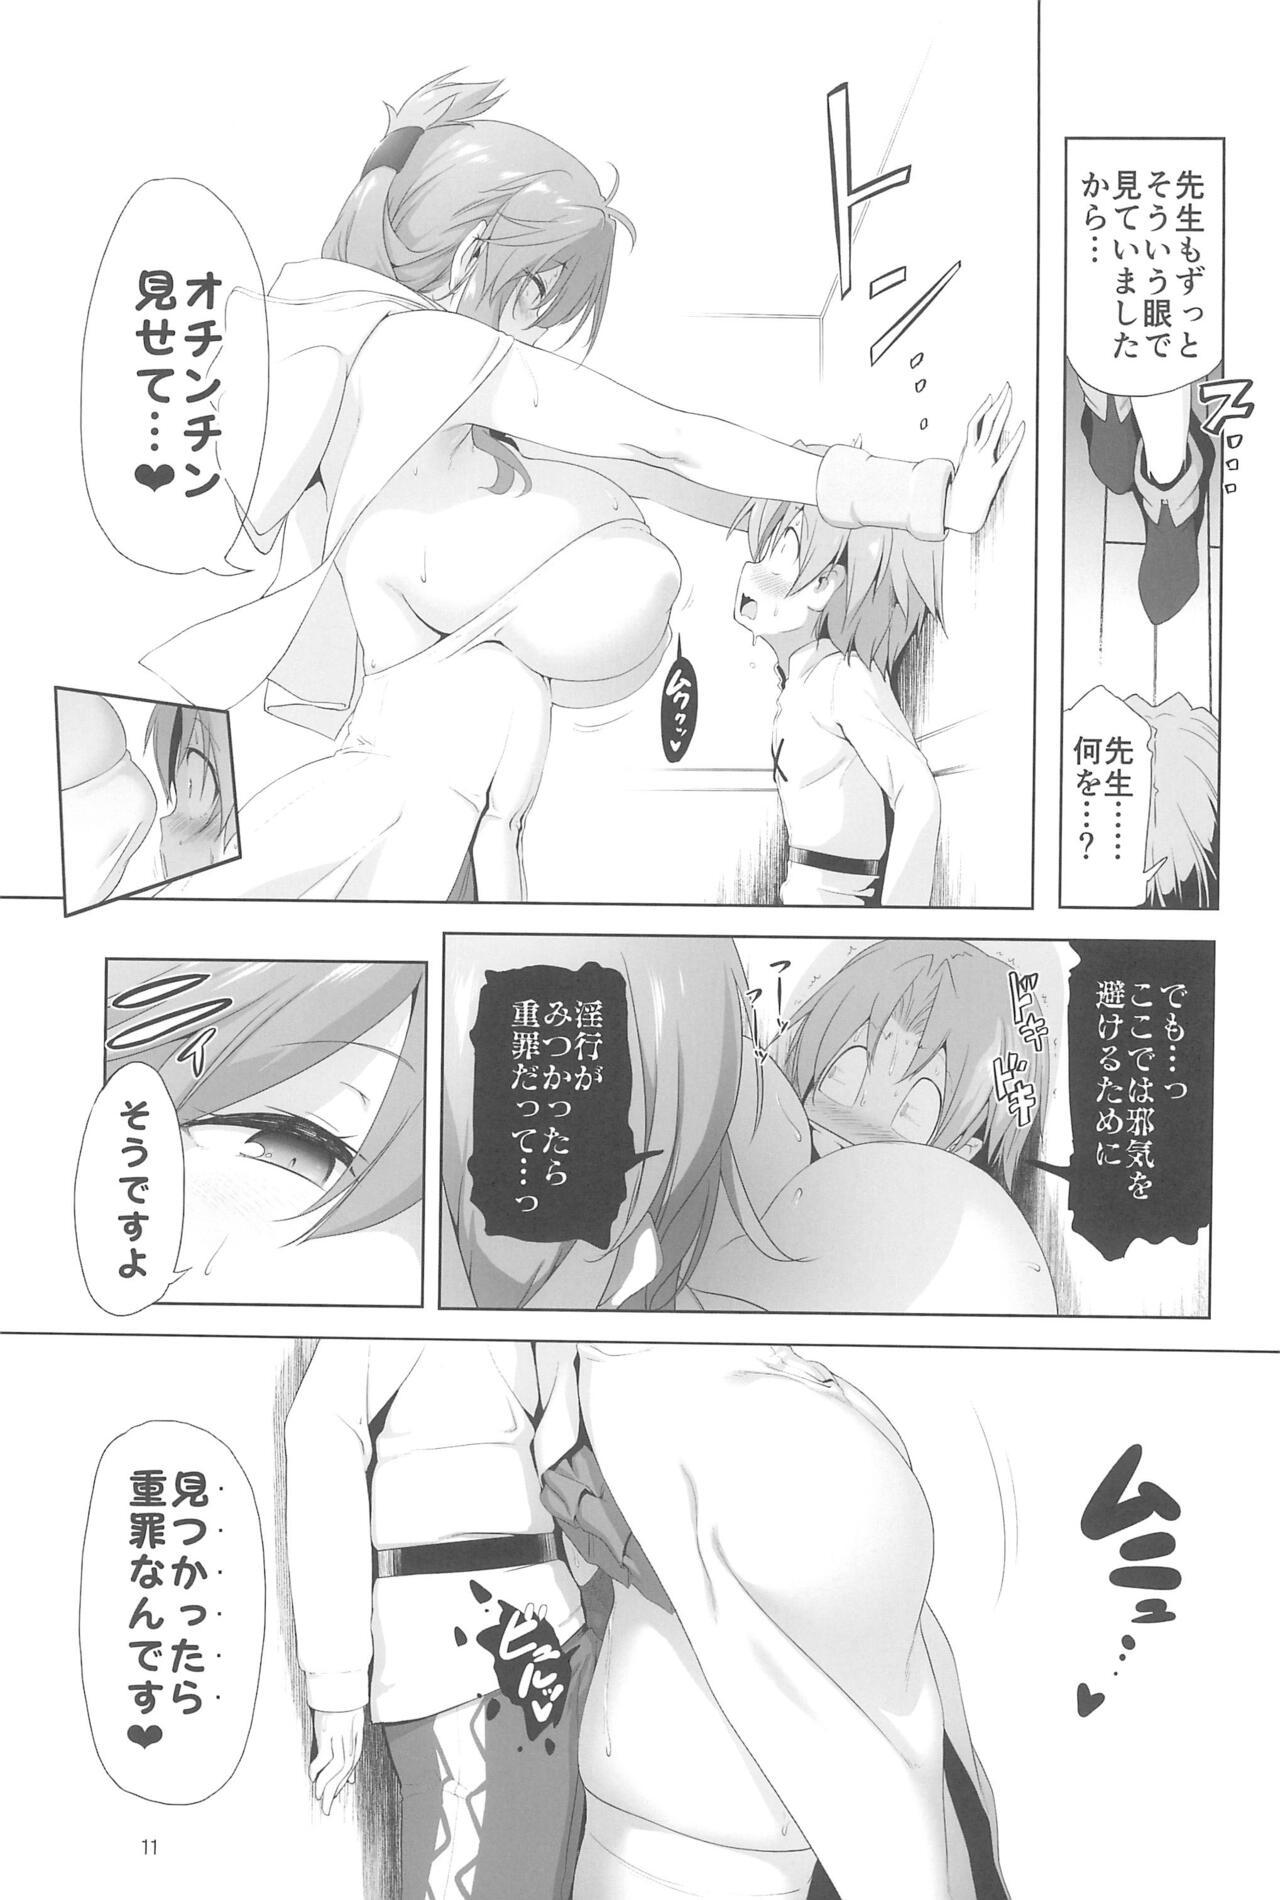 Long Hair Makotoni Zannen desu ga Bouken no Sho 9 wa Kiete Shimaimashita. - Original Bigbutt - Page 11